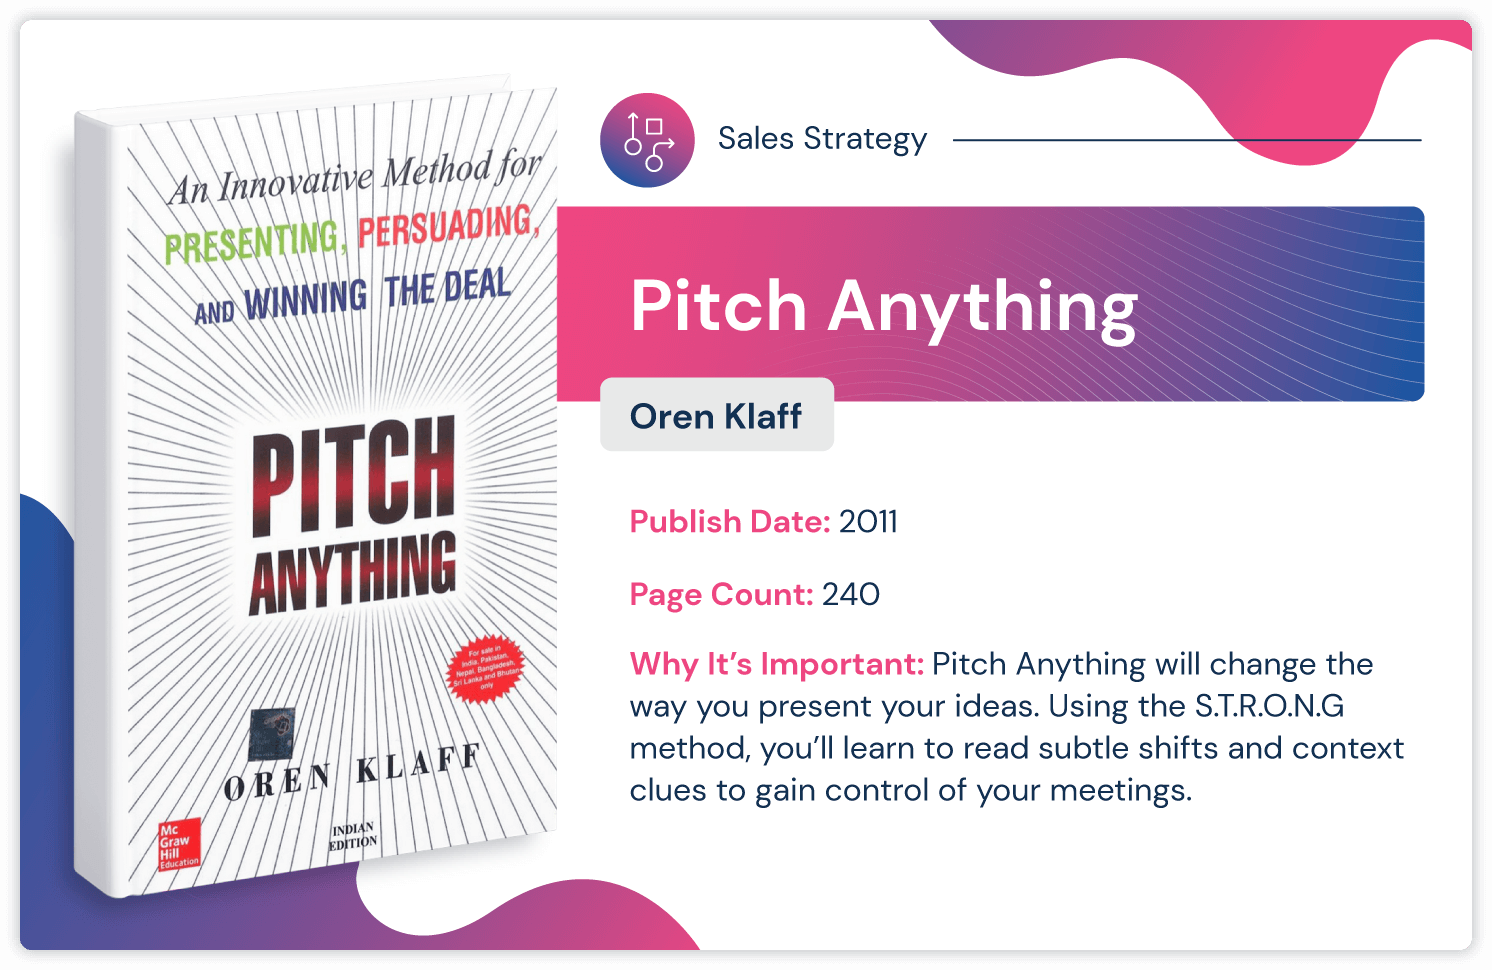 2011년에 출판된 Oren Klaff의 영업 전략 책 "Pitch Anything", 길이 240페이지.